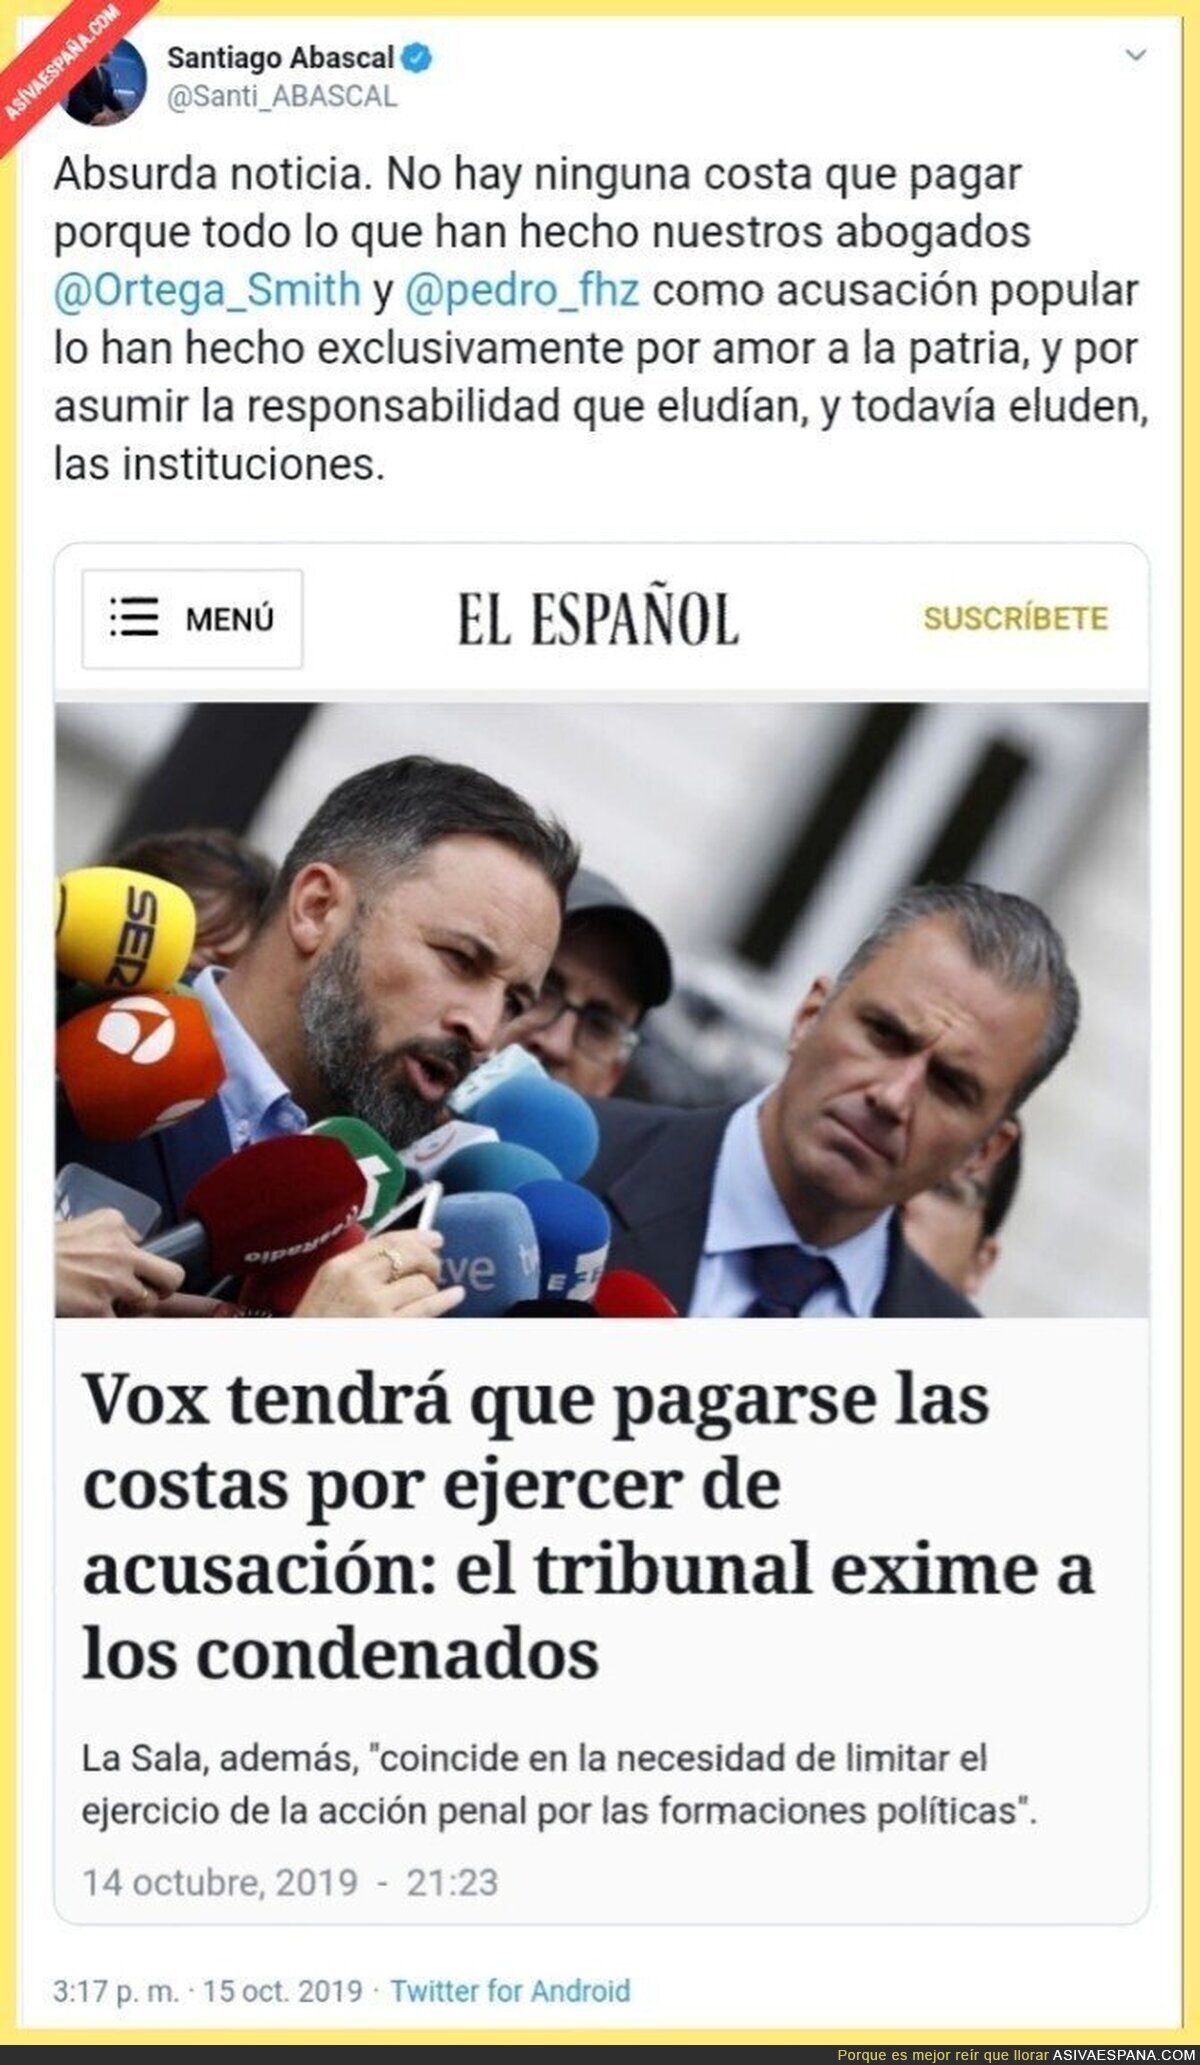 Pedro Jota (el más pelota) publica una "fake news" y Abascal le responde